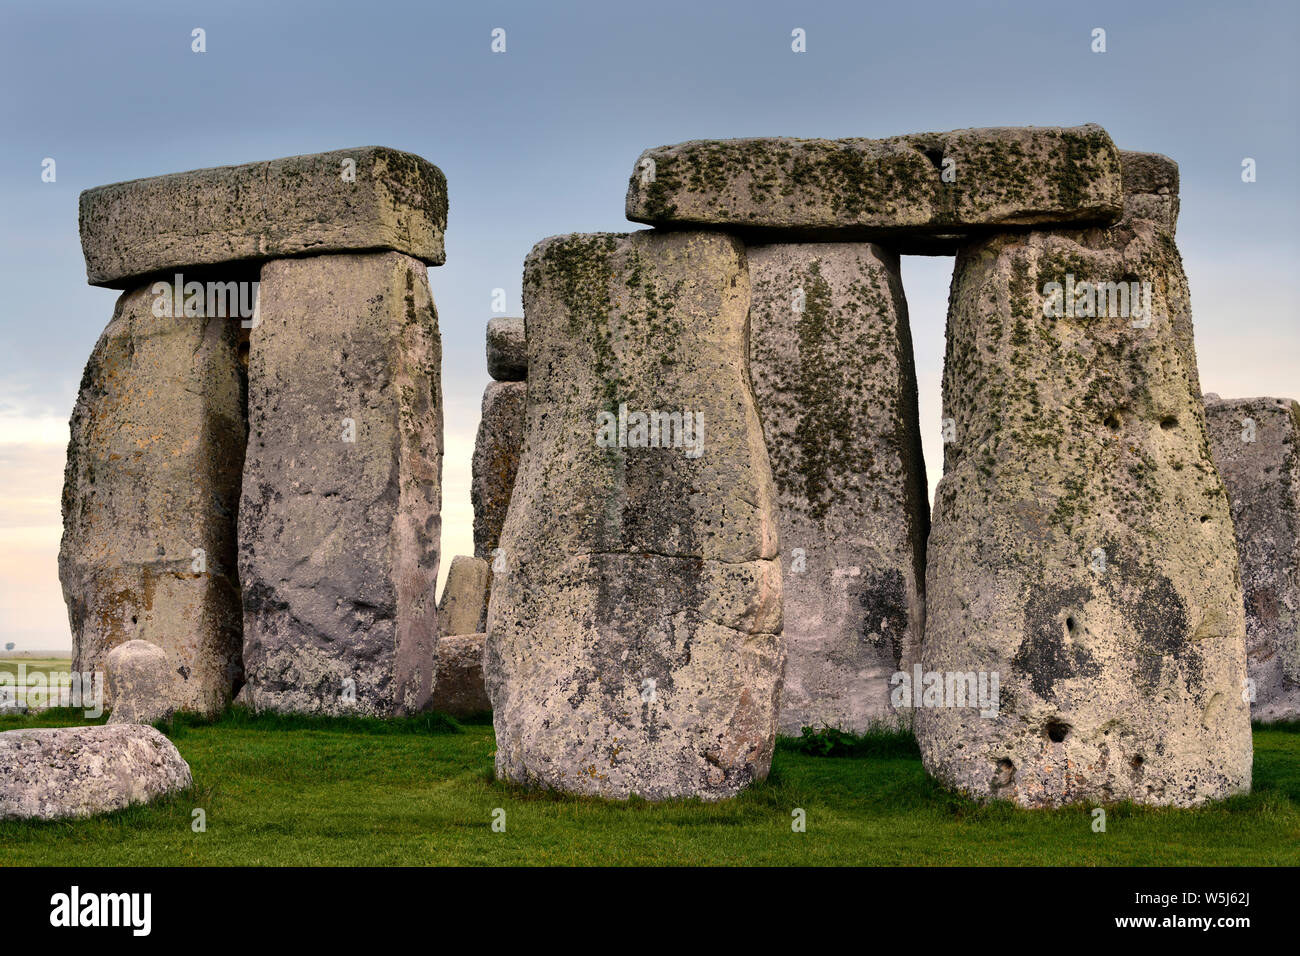 De haut standing stones avec linteaux à Stonehenge le cercle de pierre préhistorique ruines dans la plaine de Salisbury dans le Wiltshire en Angleterre à la première lumière lever du soleil Banque D'Images